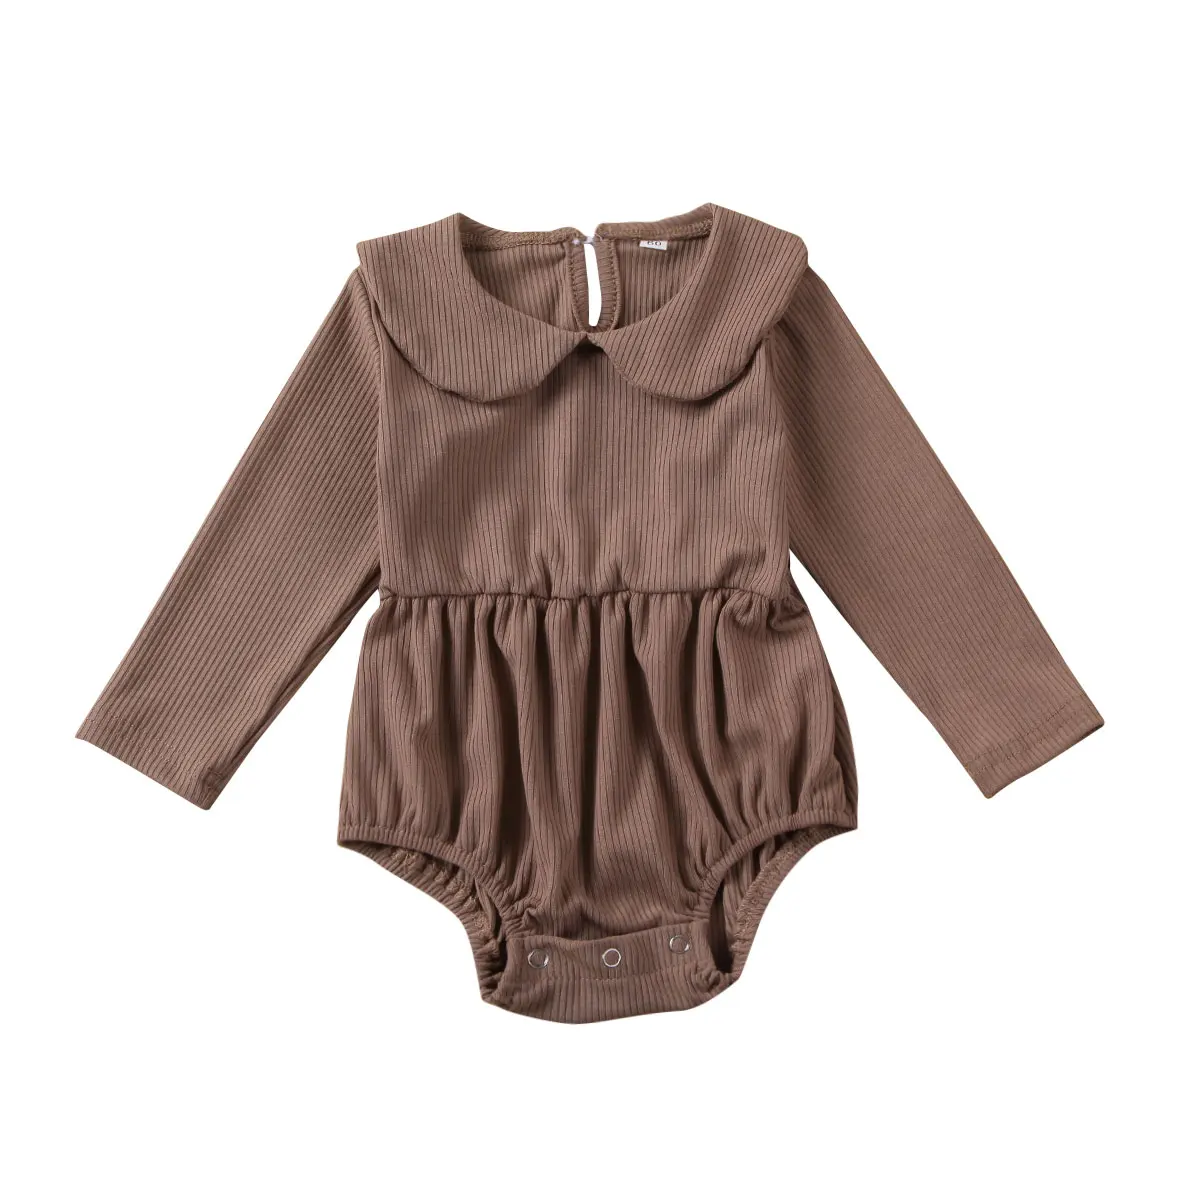 Весенне-осенняя одежда для малышей, комбинезон для новорожденных девочек и мальчиков «Питер Пэн Каллар», трикотажный комбинезон, зимняя однотонная одежда - Цвет: Coffee